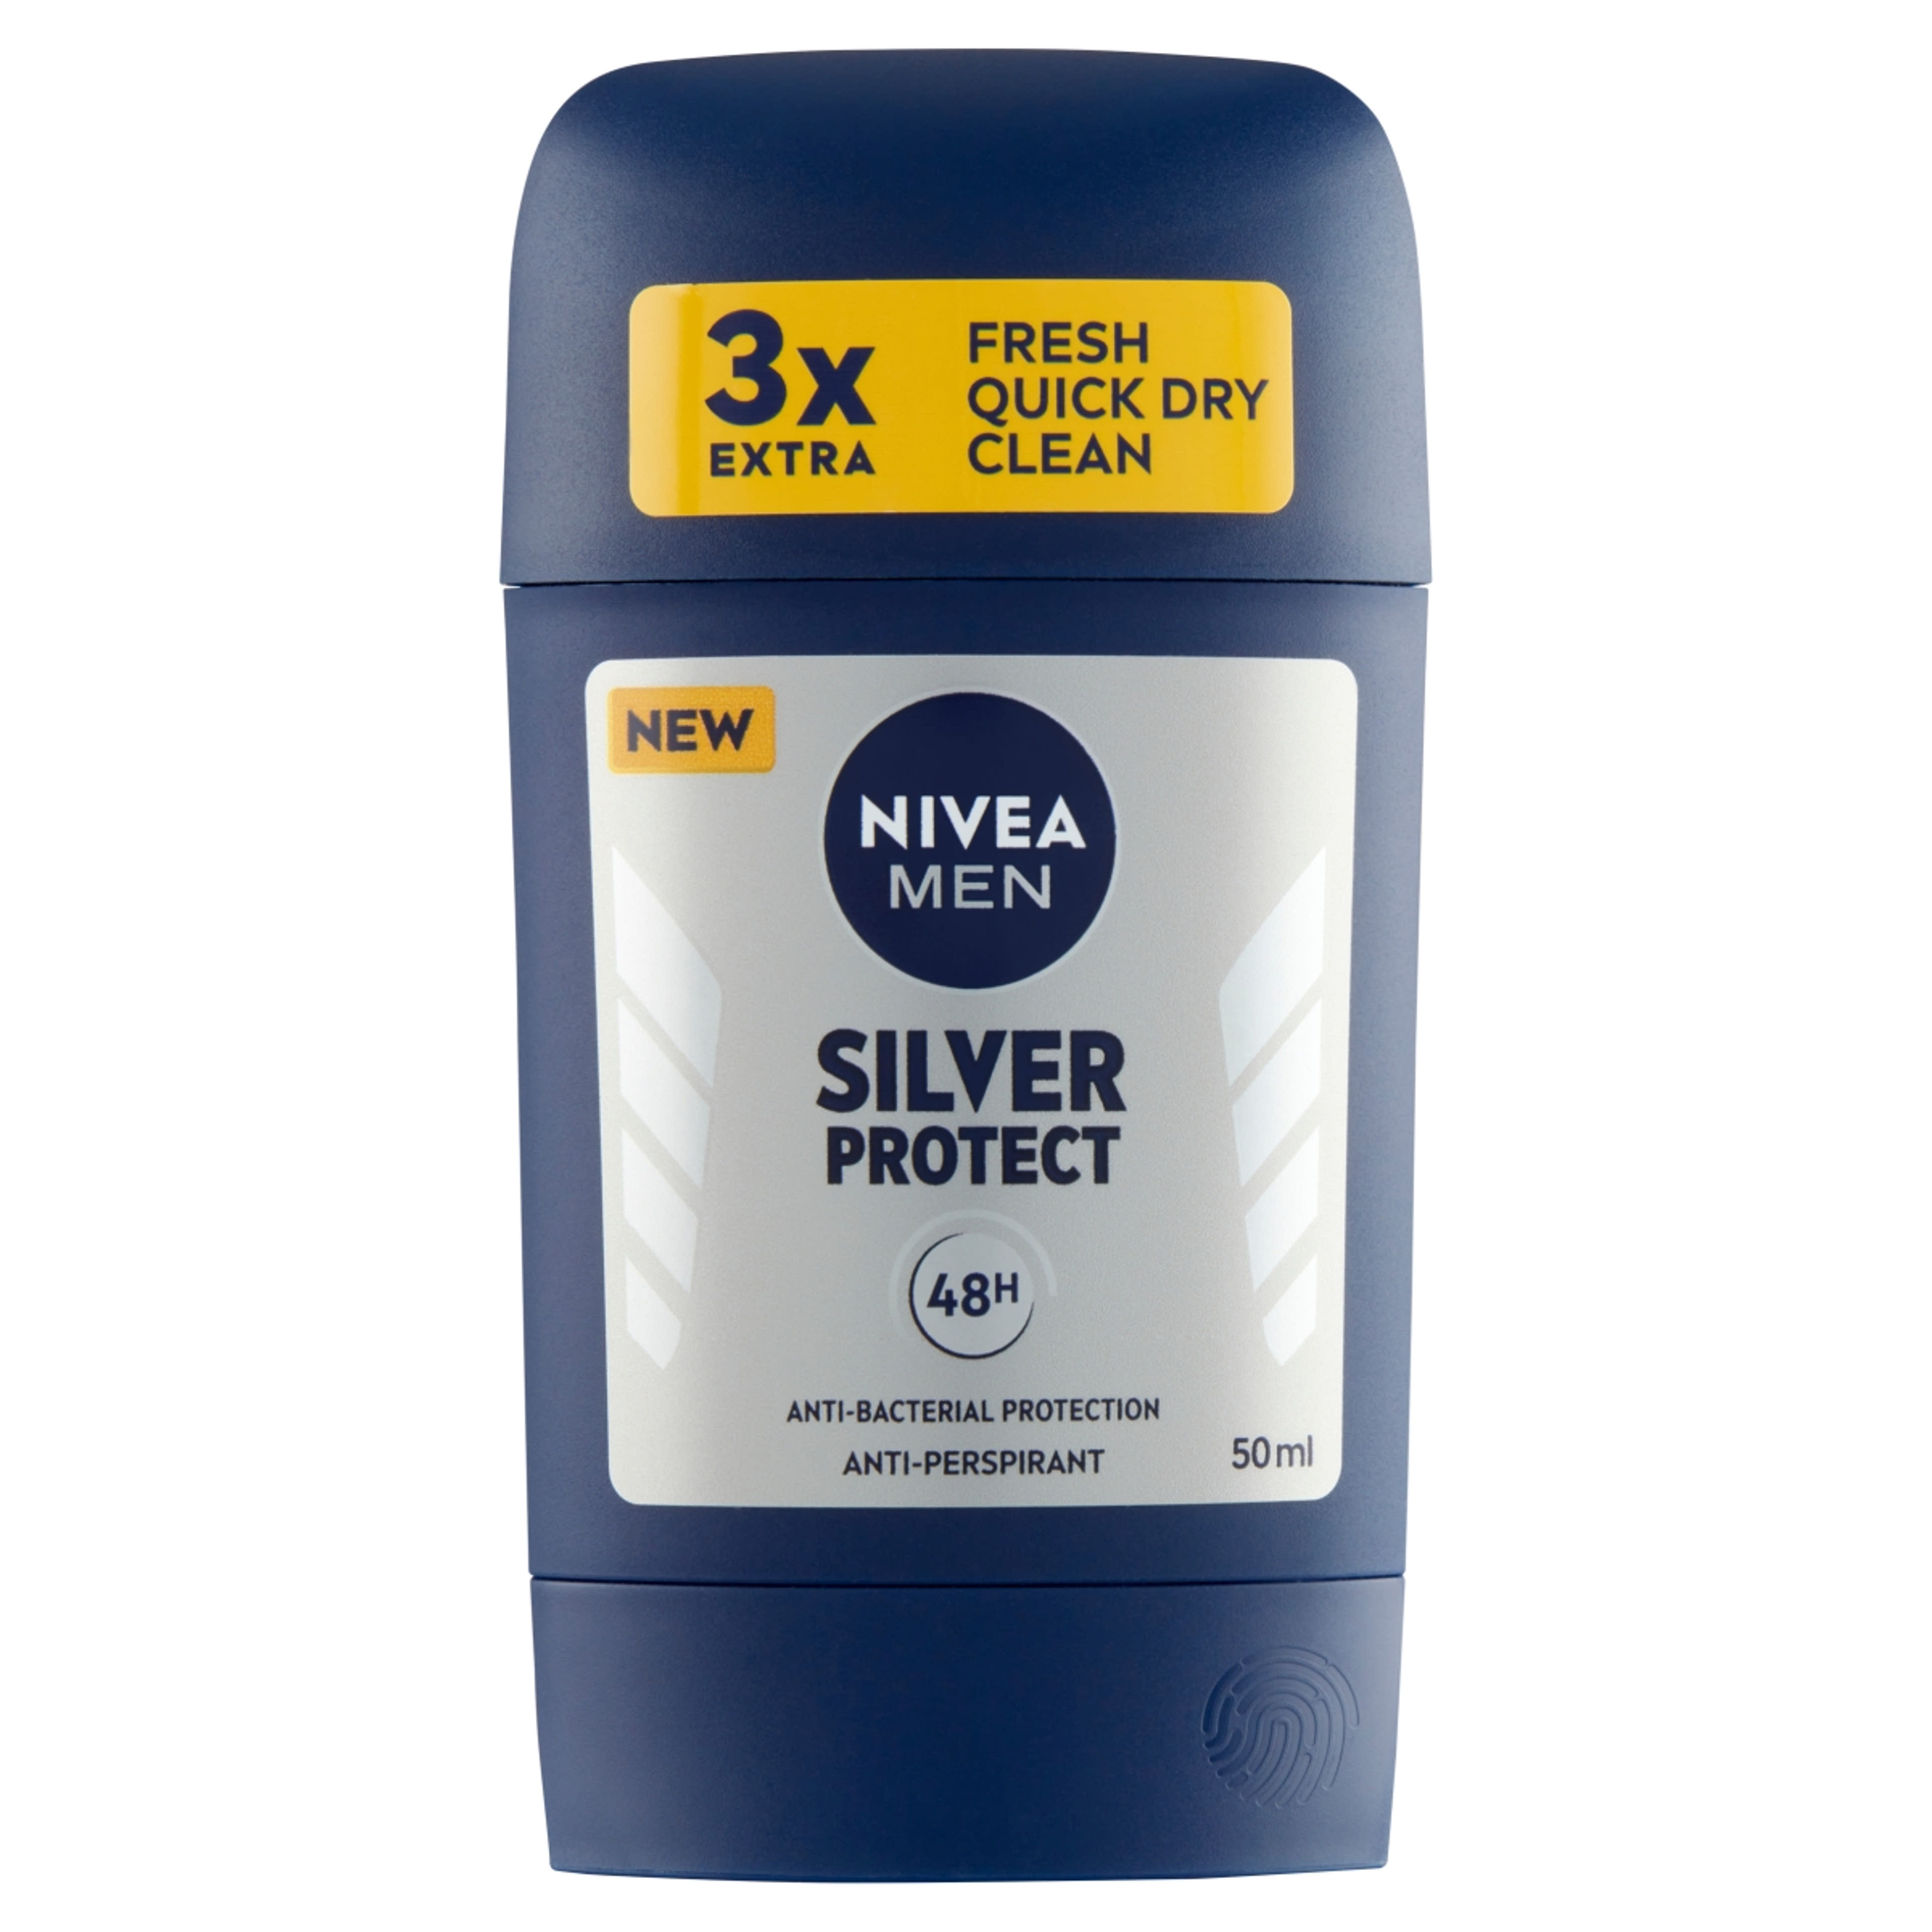 Nivea Men Silver Protect deo stift - 50 ml